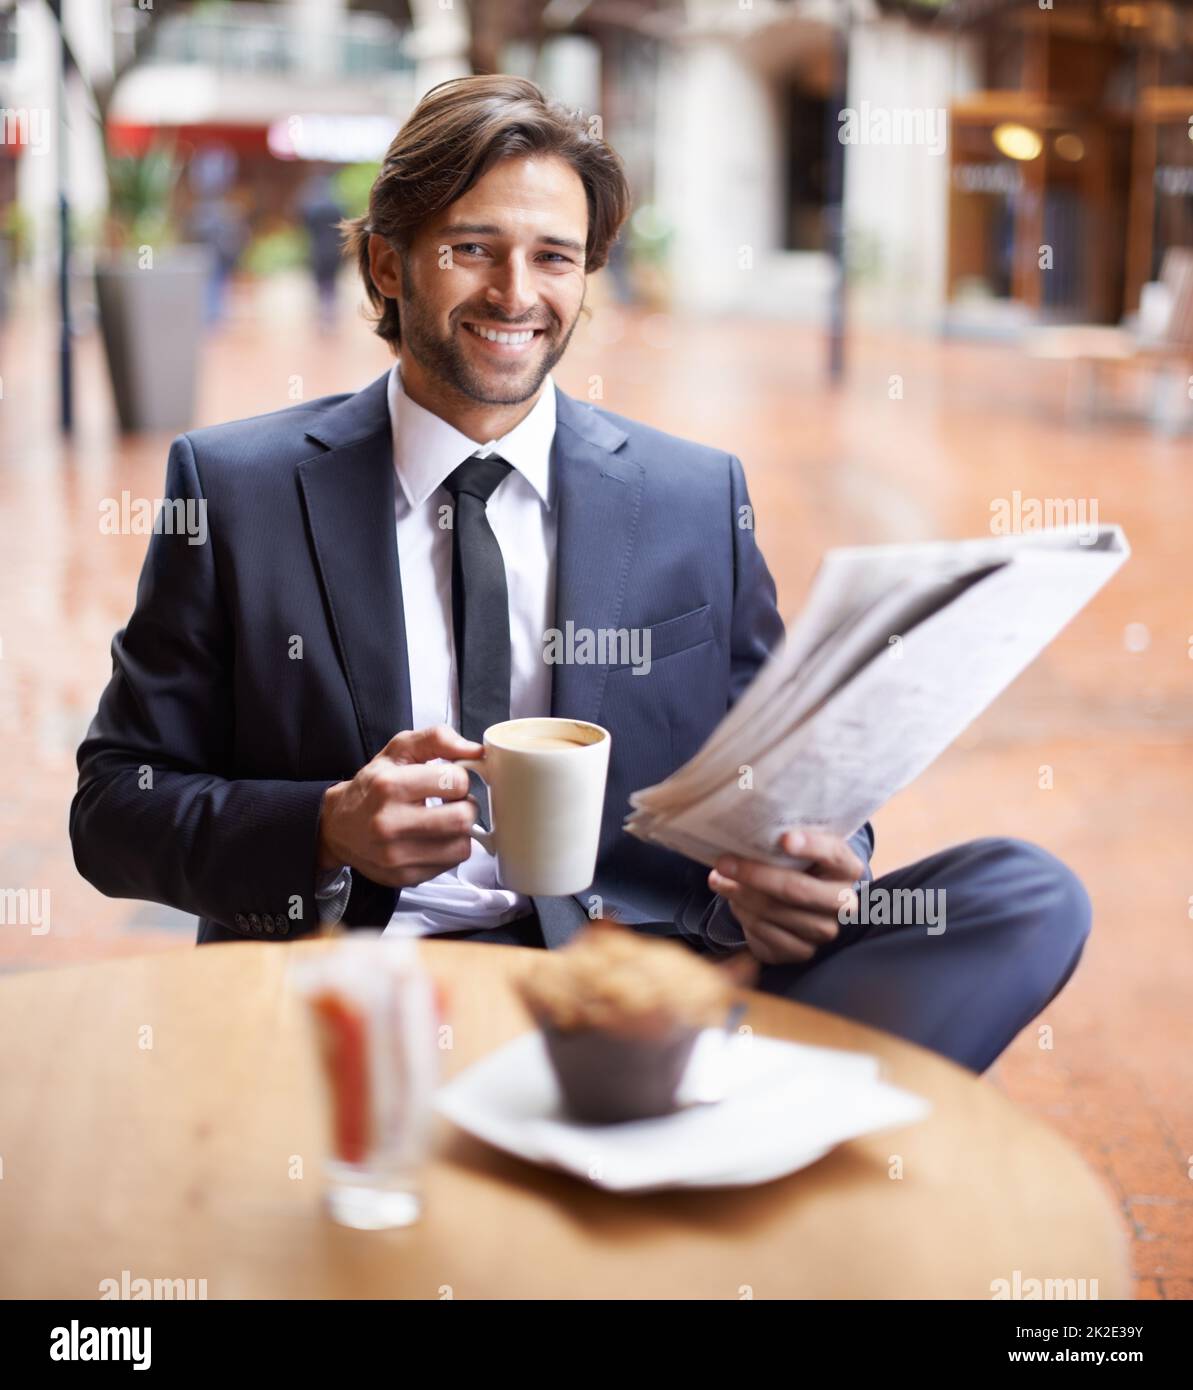 Un po' di tempo per me nel bel mezzo di una giornata piena di impegni. Un uomo d'affari che ha una pausa caffè mentre legge le notizie. Foto Stock